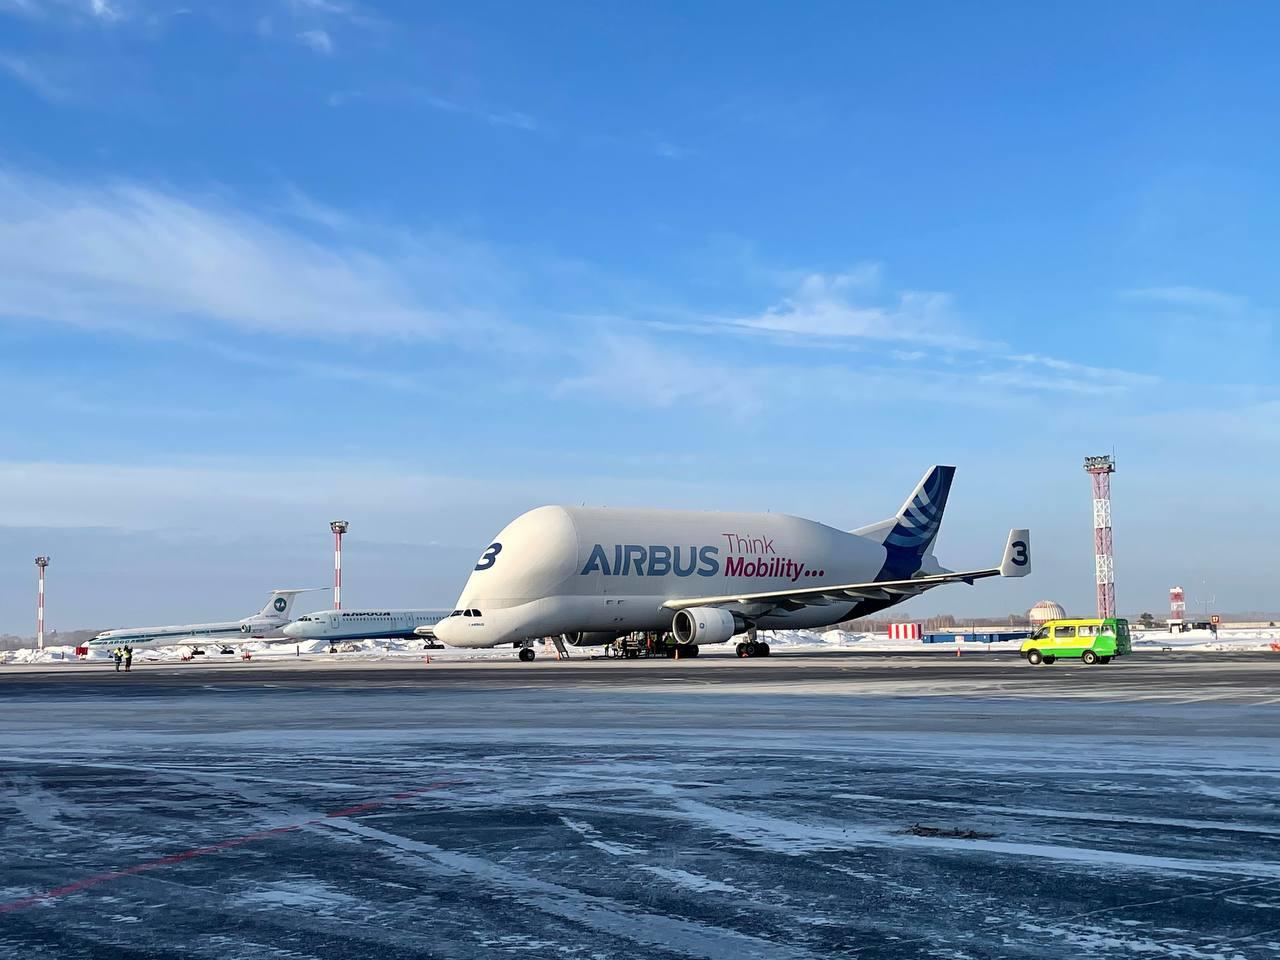 Airbus pronta a offrire un nuovo servizio di trasporto merci oversize grazie al Beluga XL